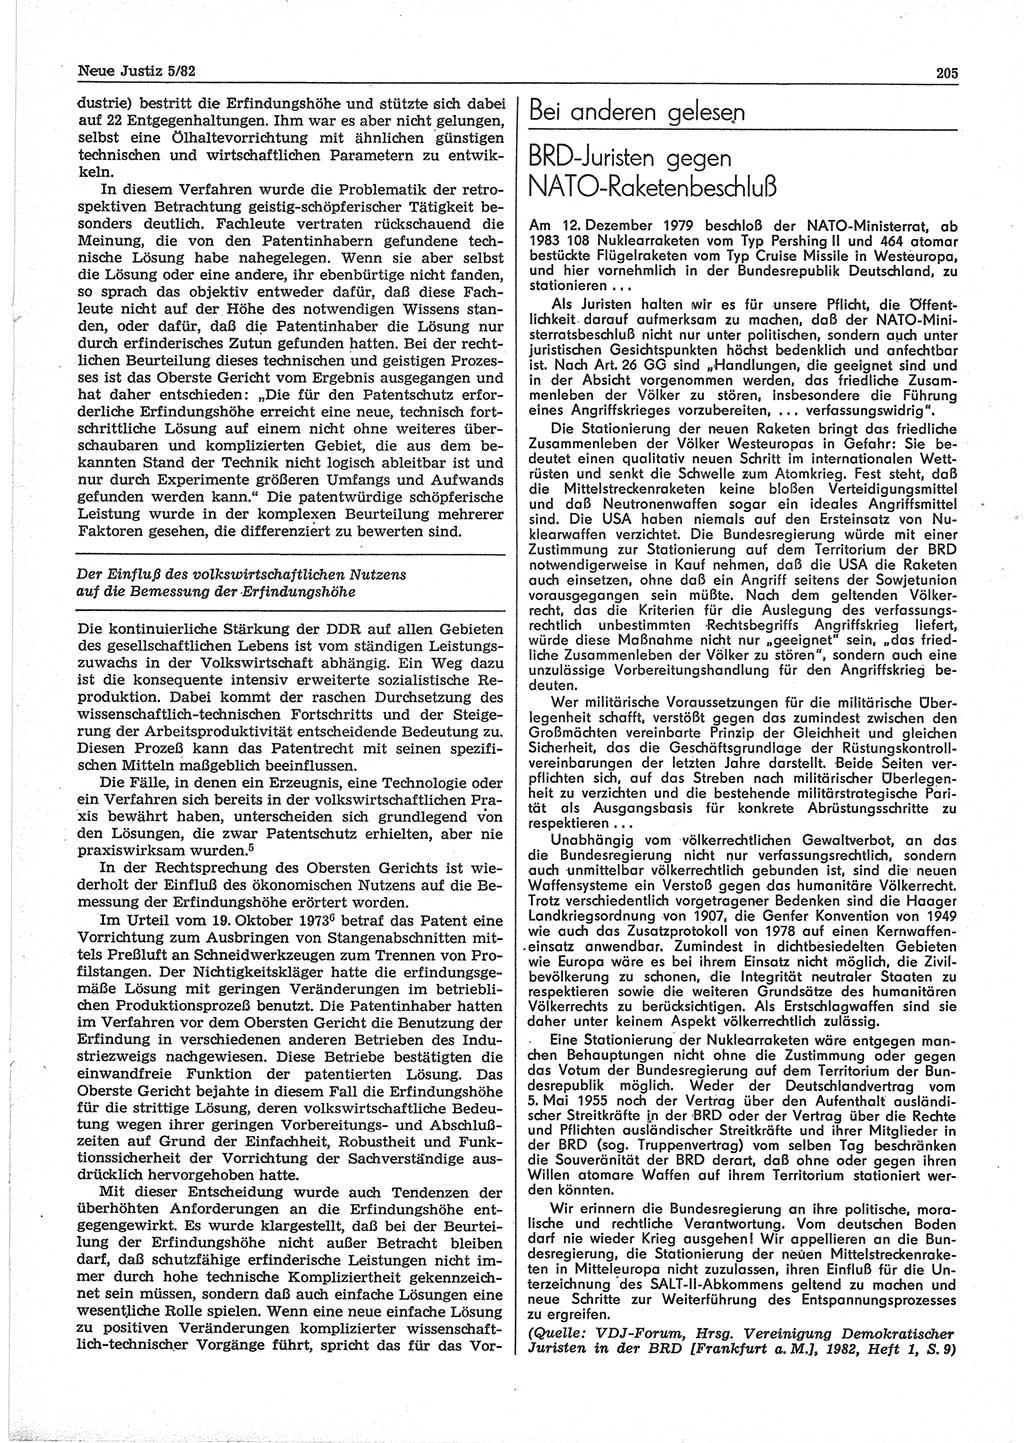 Neue Justiz (NJ), Zeitschrift für sozialistisches Recht und Gesetzlichkeit [Deutsche Demokratische Republik (DDR)], 36. Jahrgang 1982, Seite 205 (NJ DDR 1982, S. 205)